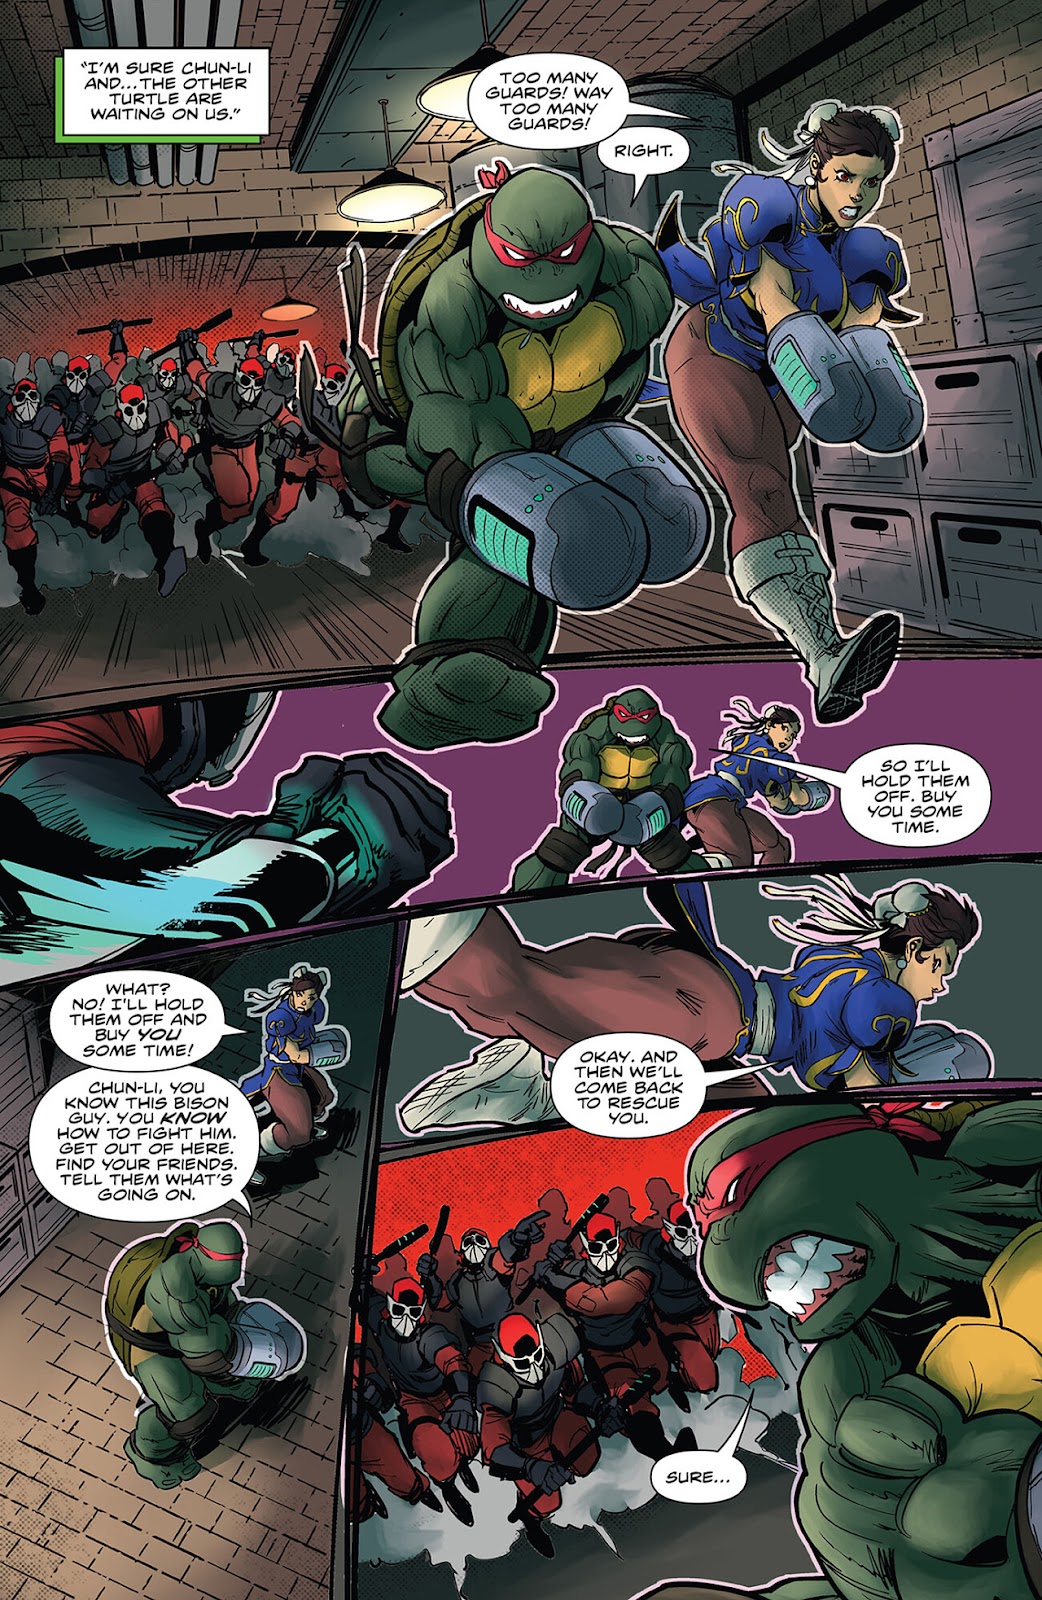 Teenage Mutant Ninja Turtles Vs. Street Fighter' Comic